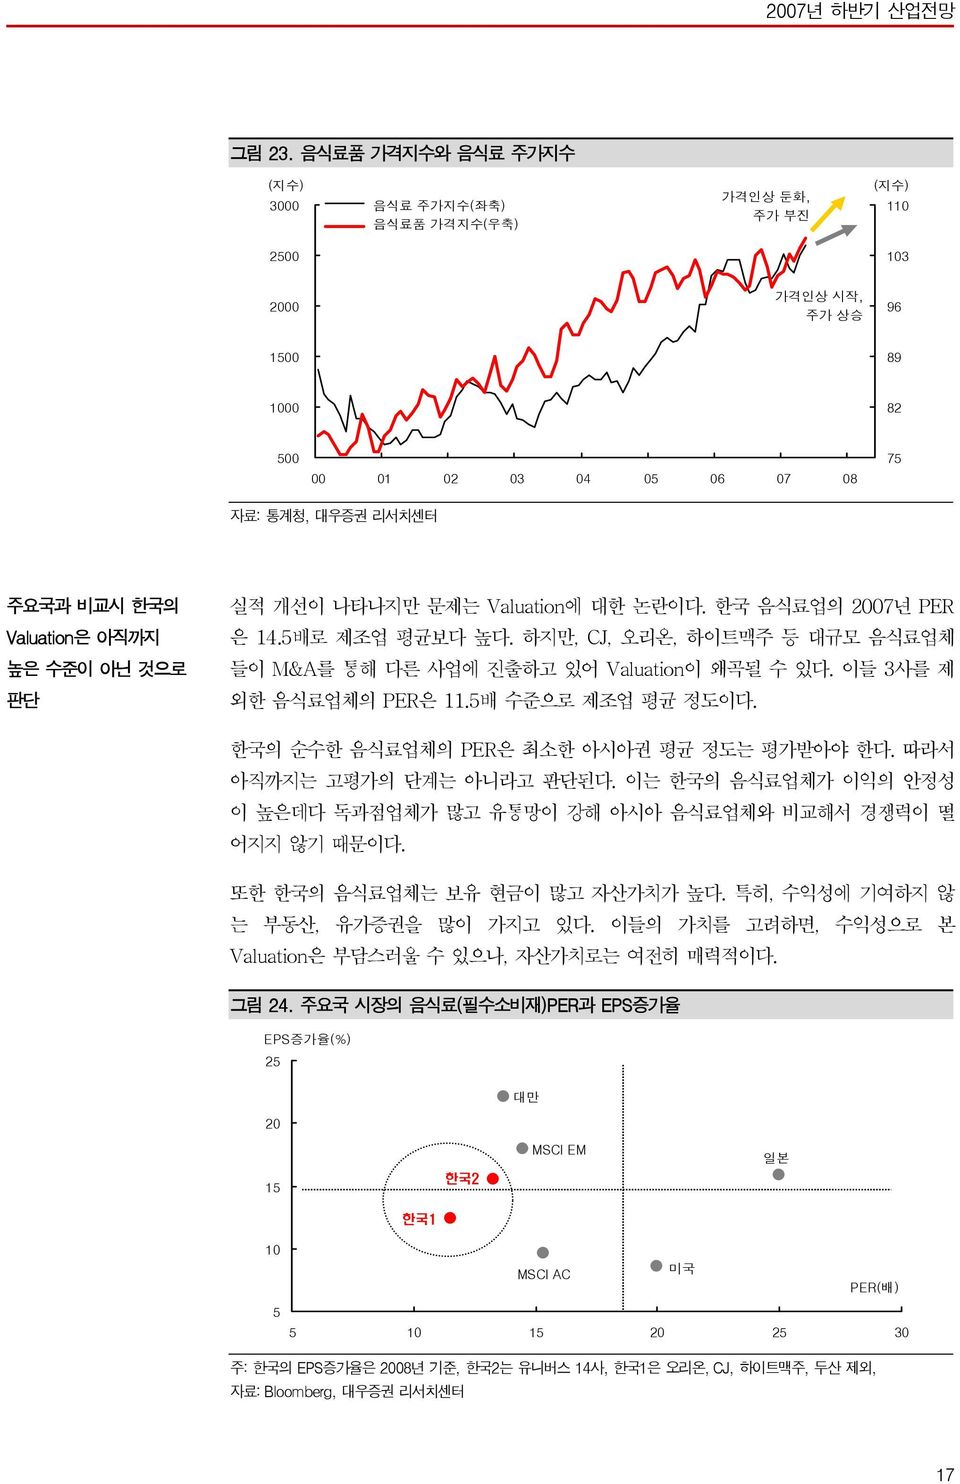 리서치센터 주요국과 비교시 한국의 Valuation은 아직까지 높은 수준이 아닌 것으로 판단 실적 개선이 나타나지만 문제는 Valuation에 대한 논란이다. 한국 음식료업의 27년 PER 은 14.5배로 제조업 평균보다 높다.